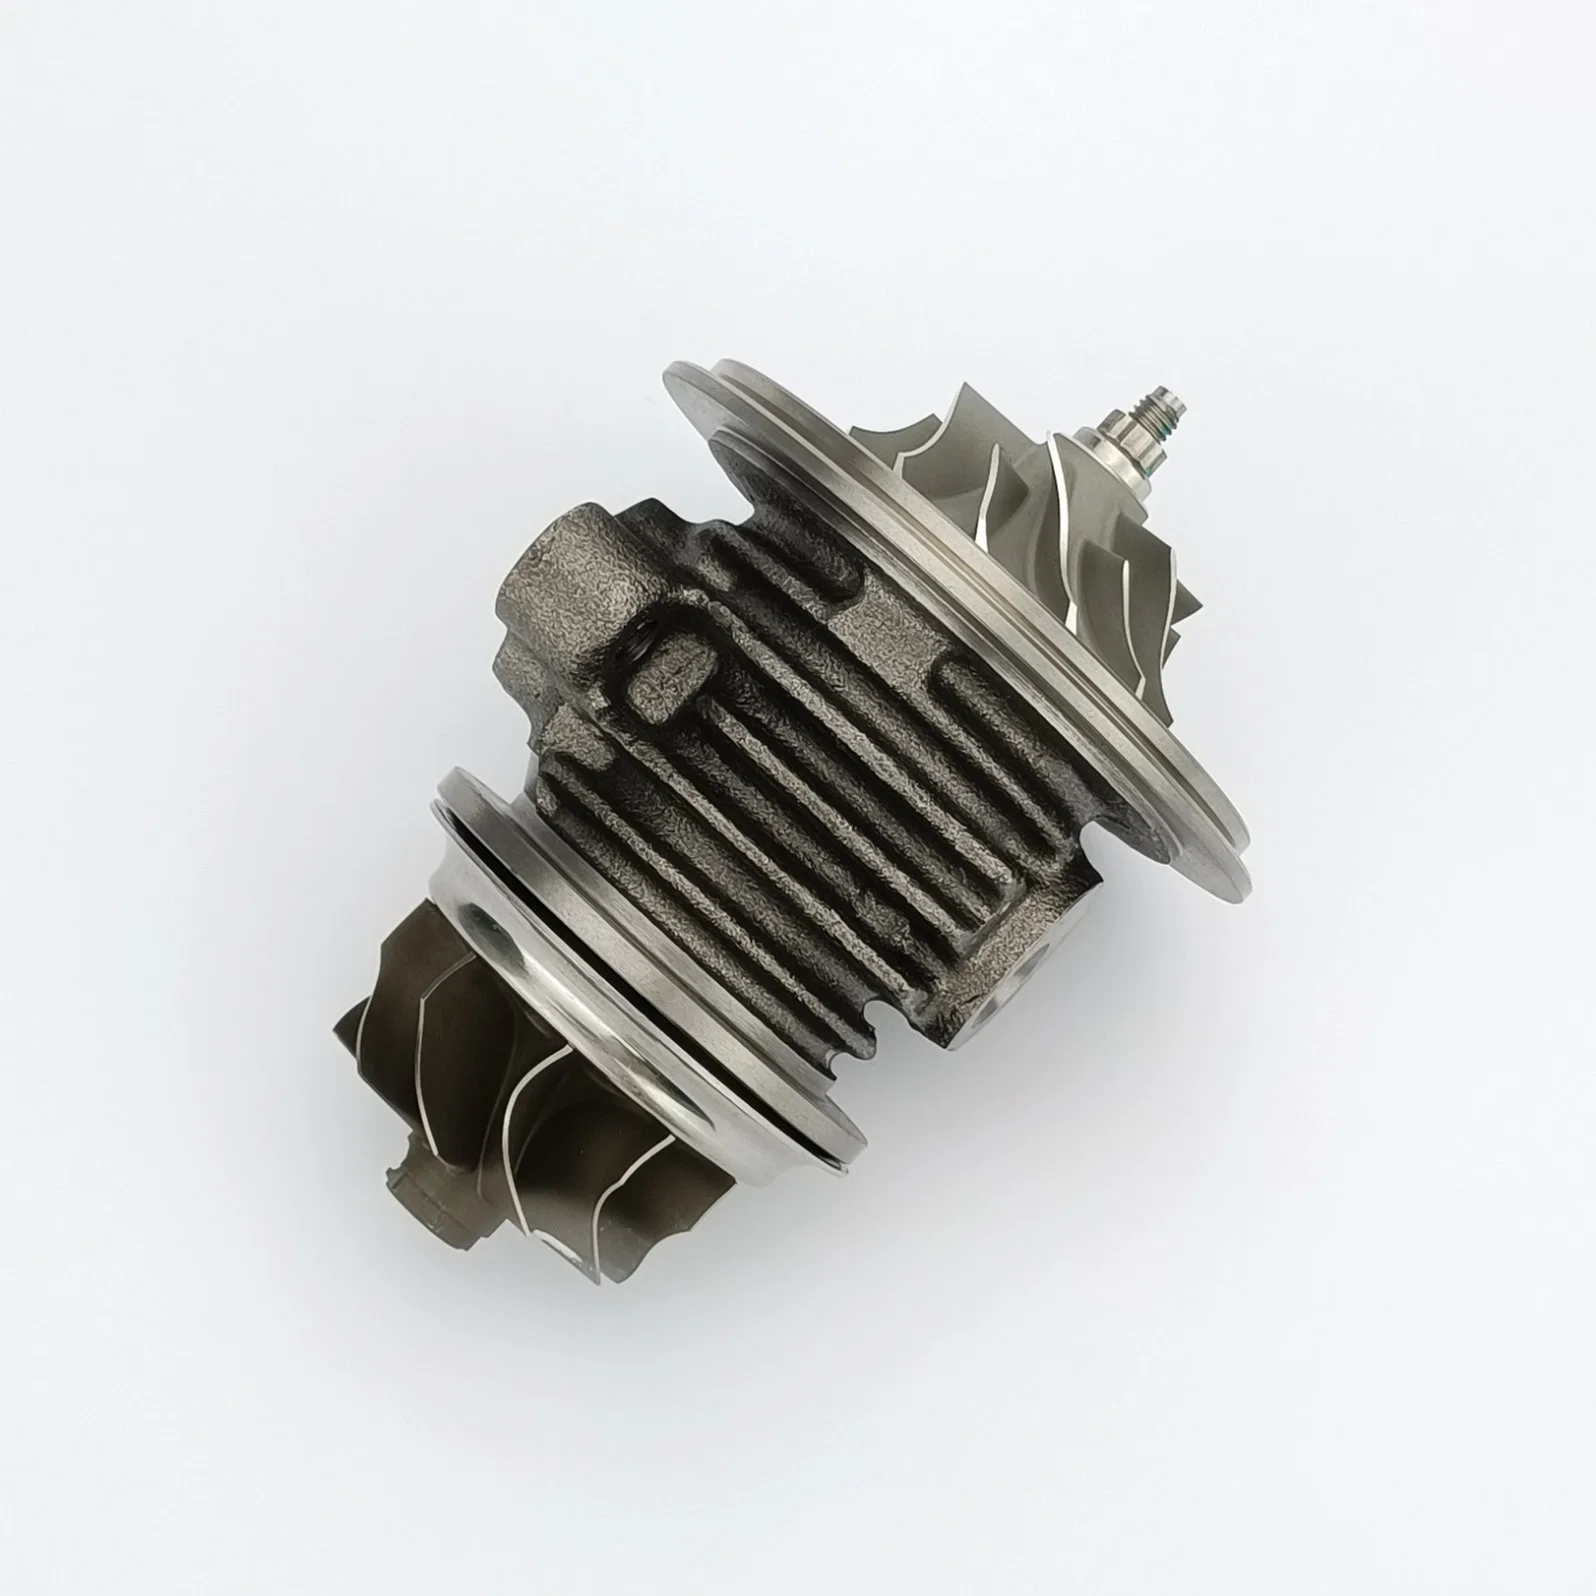 CHRA (cartucho) para turbocompresores T250 465153-0003/ 465153-5003s/ 465153-3